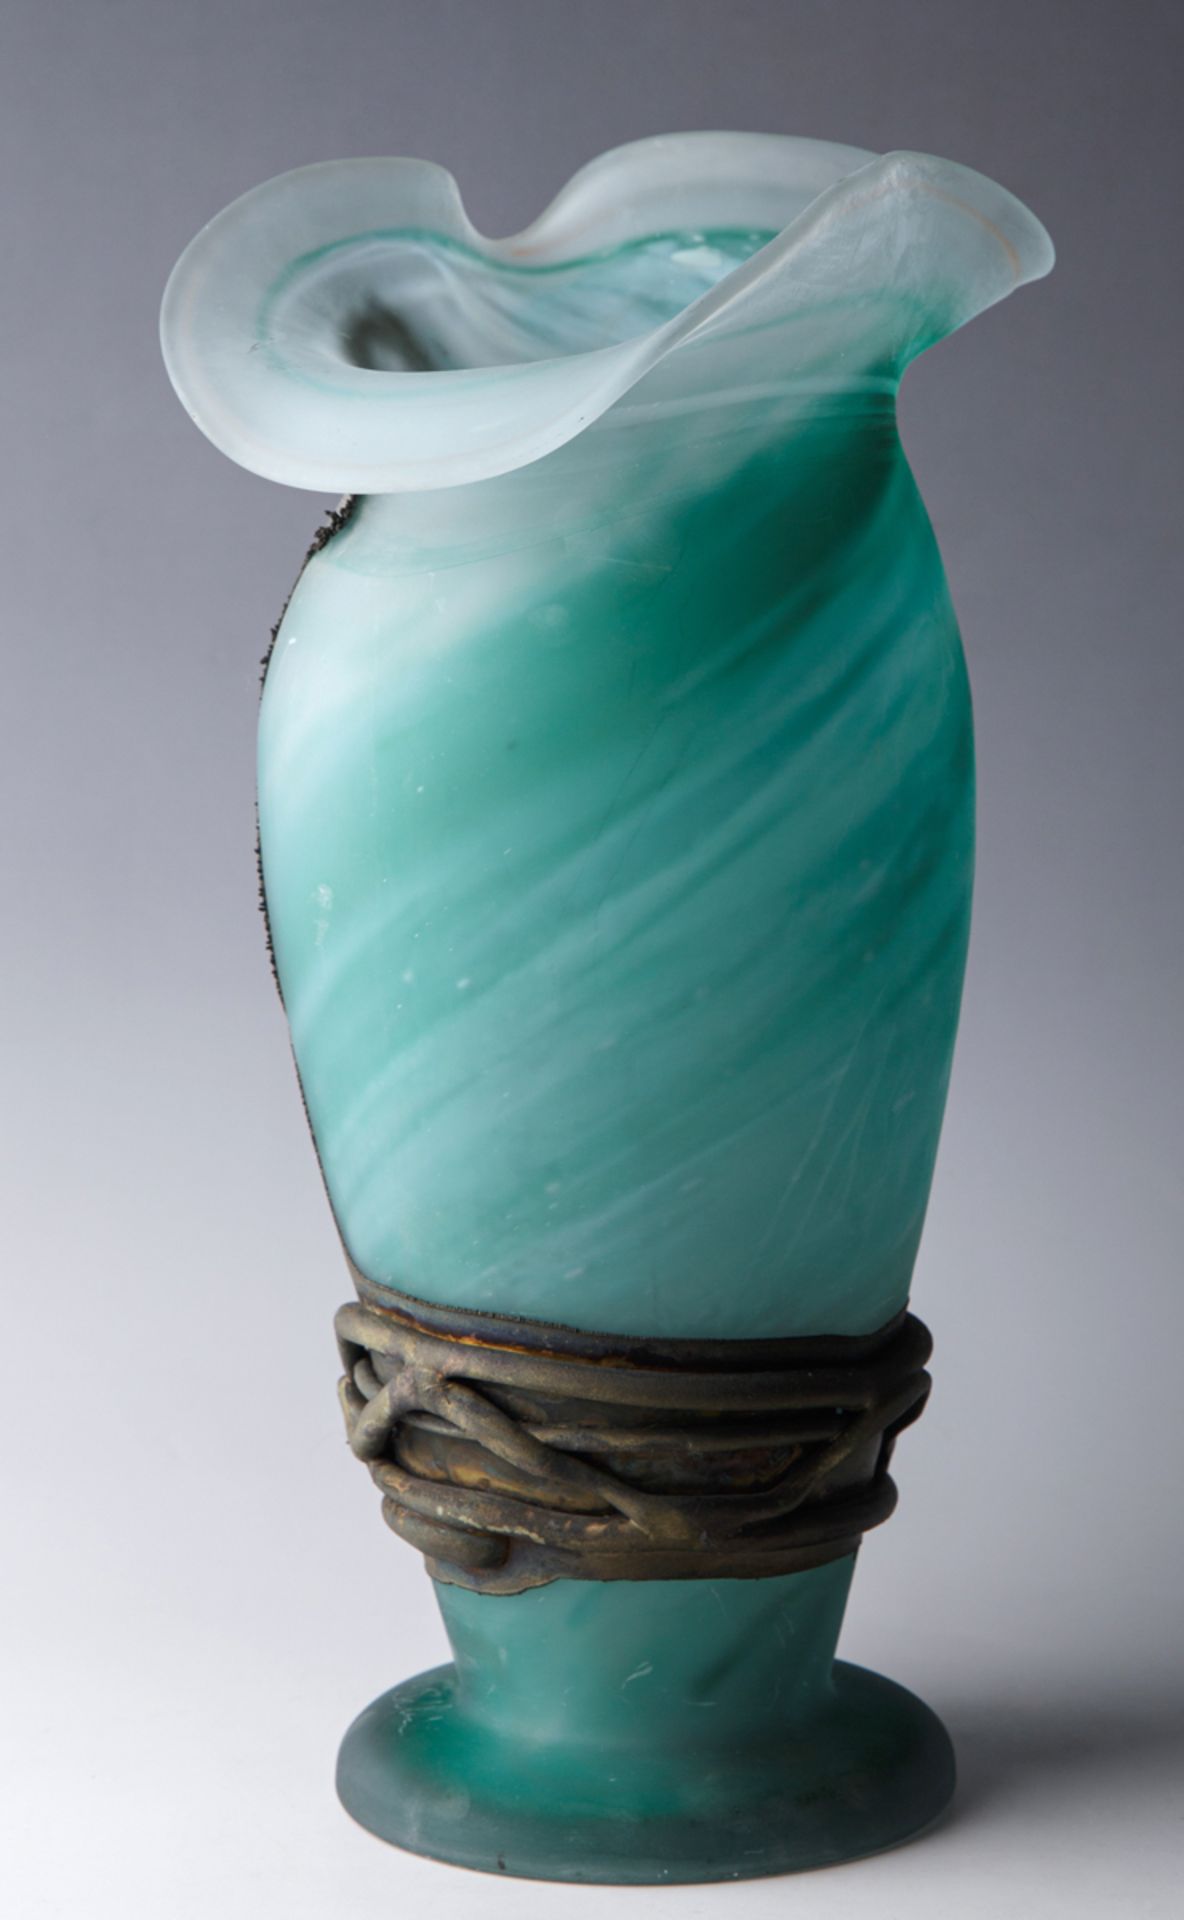 Vase mit Blech Overlay, 2. Hälfte 20. Jh. - Image 2 of 3